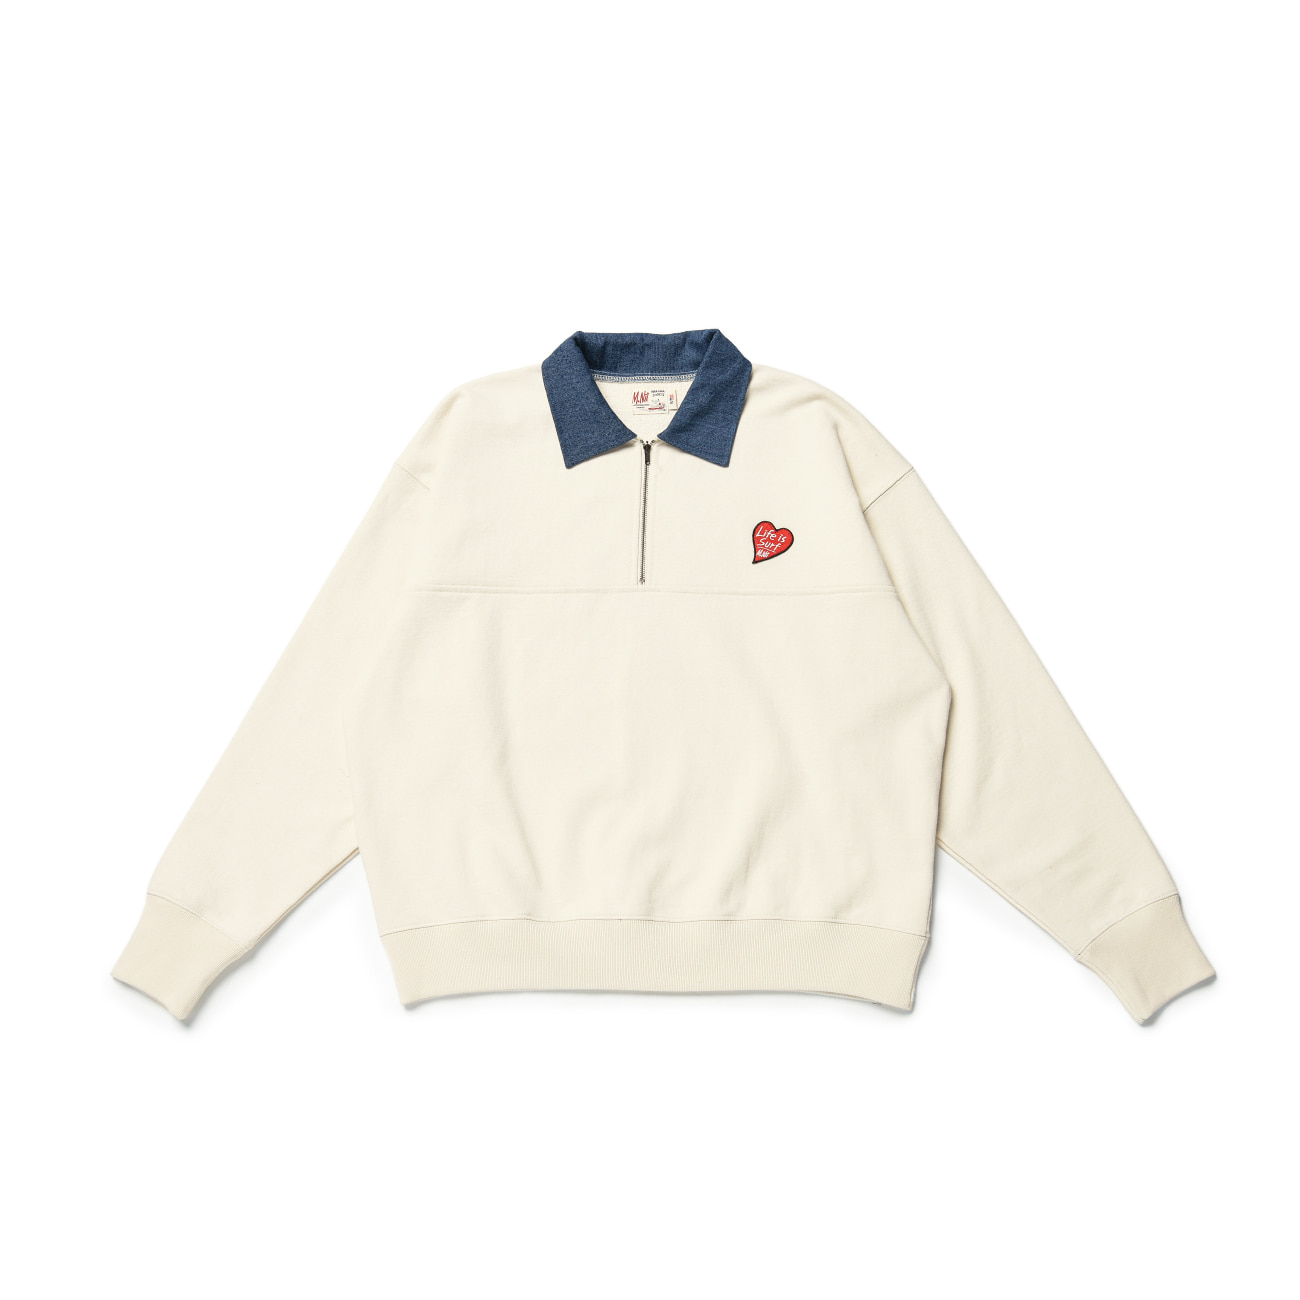 1950’s 1/2 Zip Sweatshirt